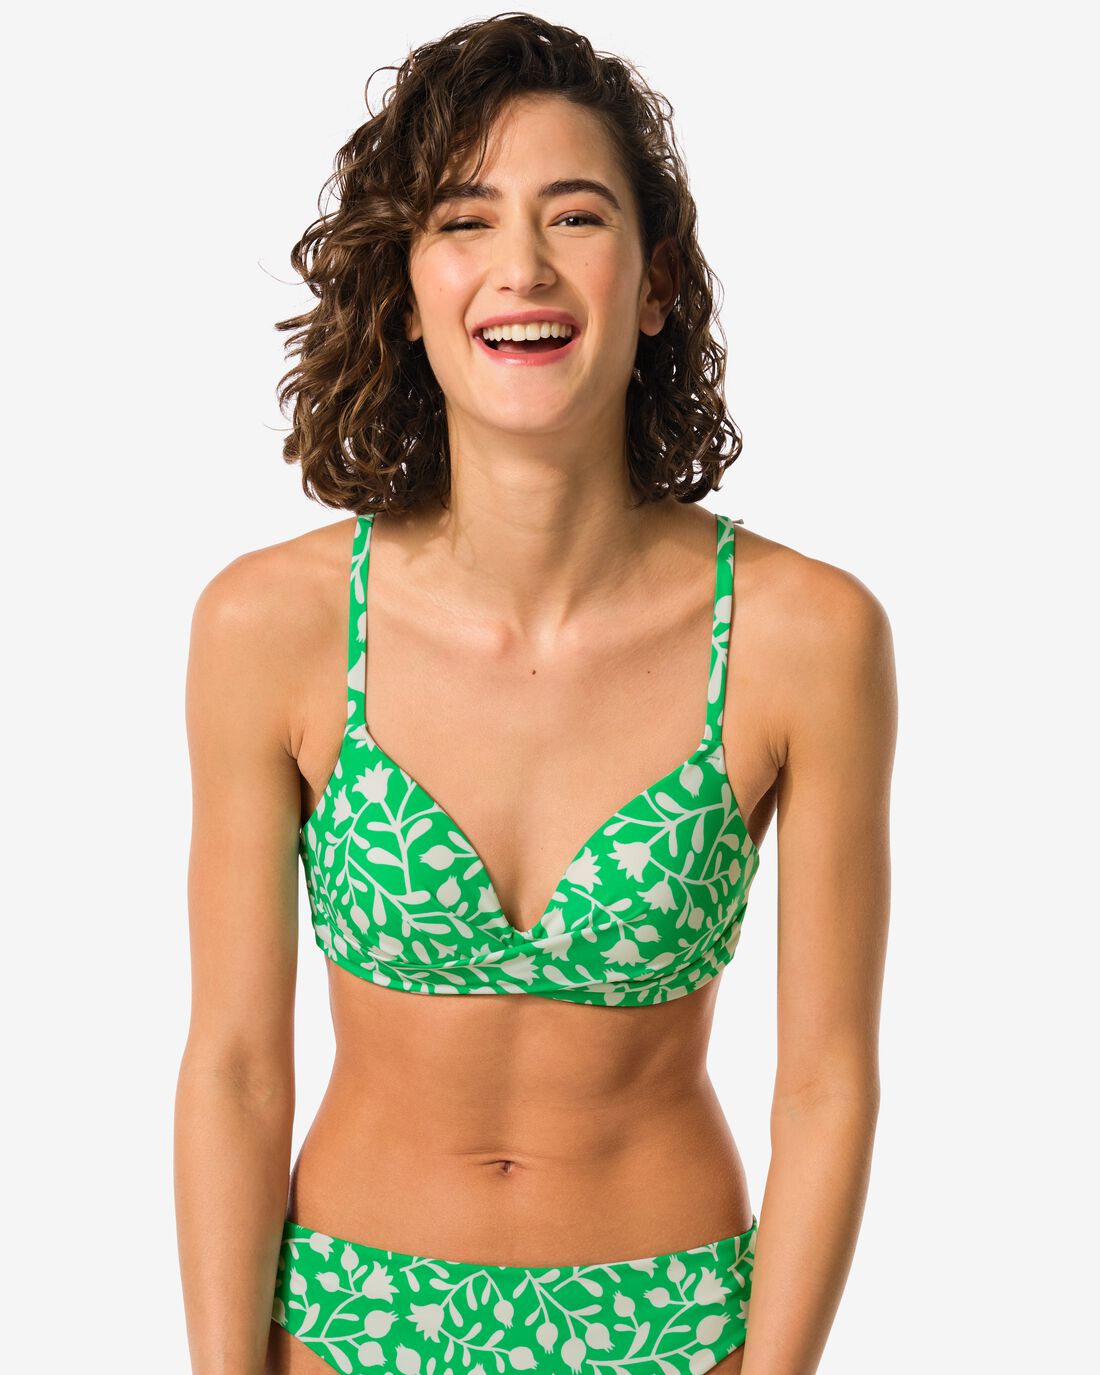 HEMA Dames Bikinitop Groen (groen)